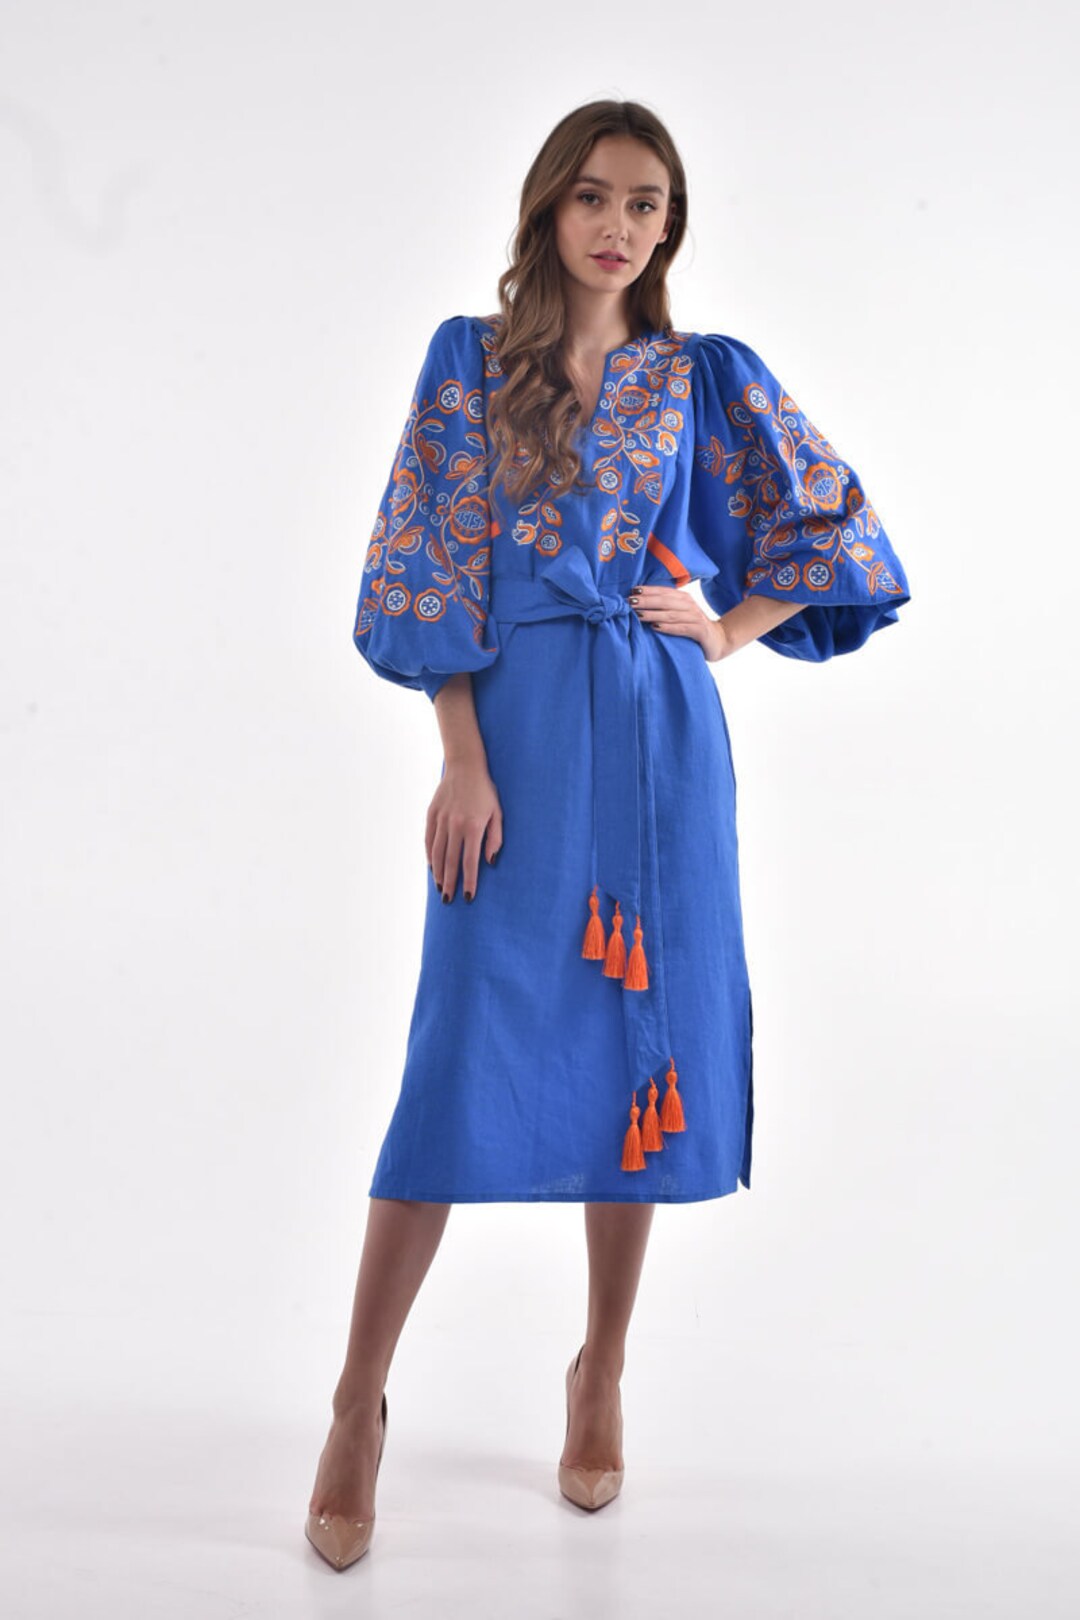 Ethnic Dress Women's Clothing Ukrainian Embroidered Dress - Etsy